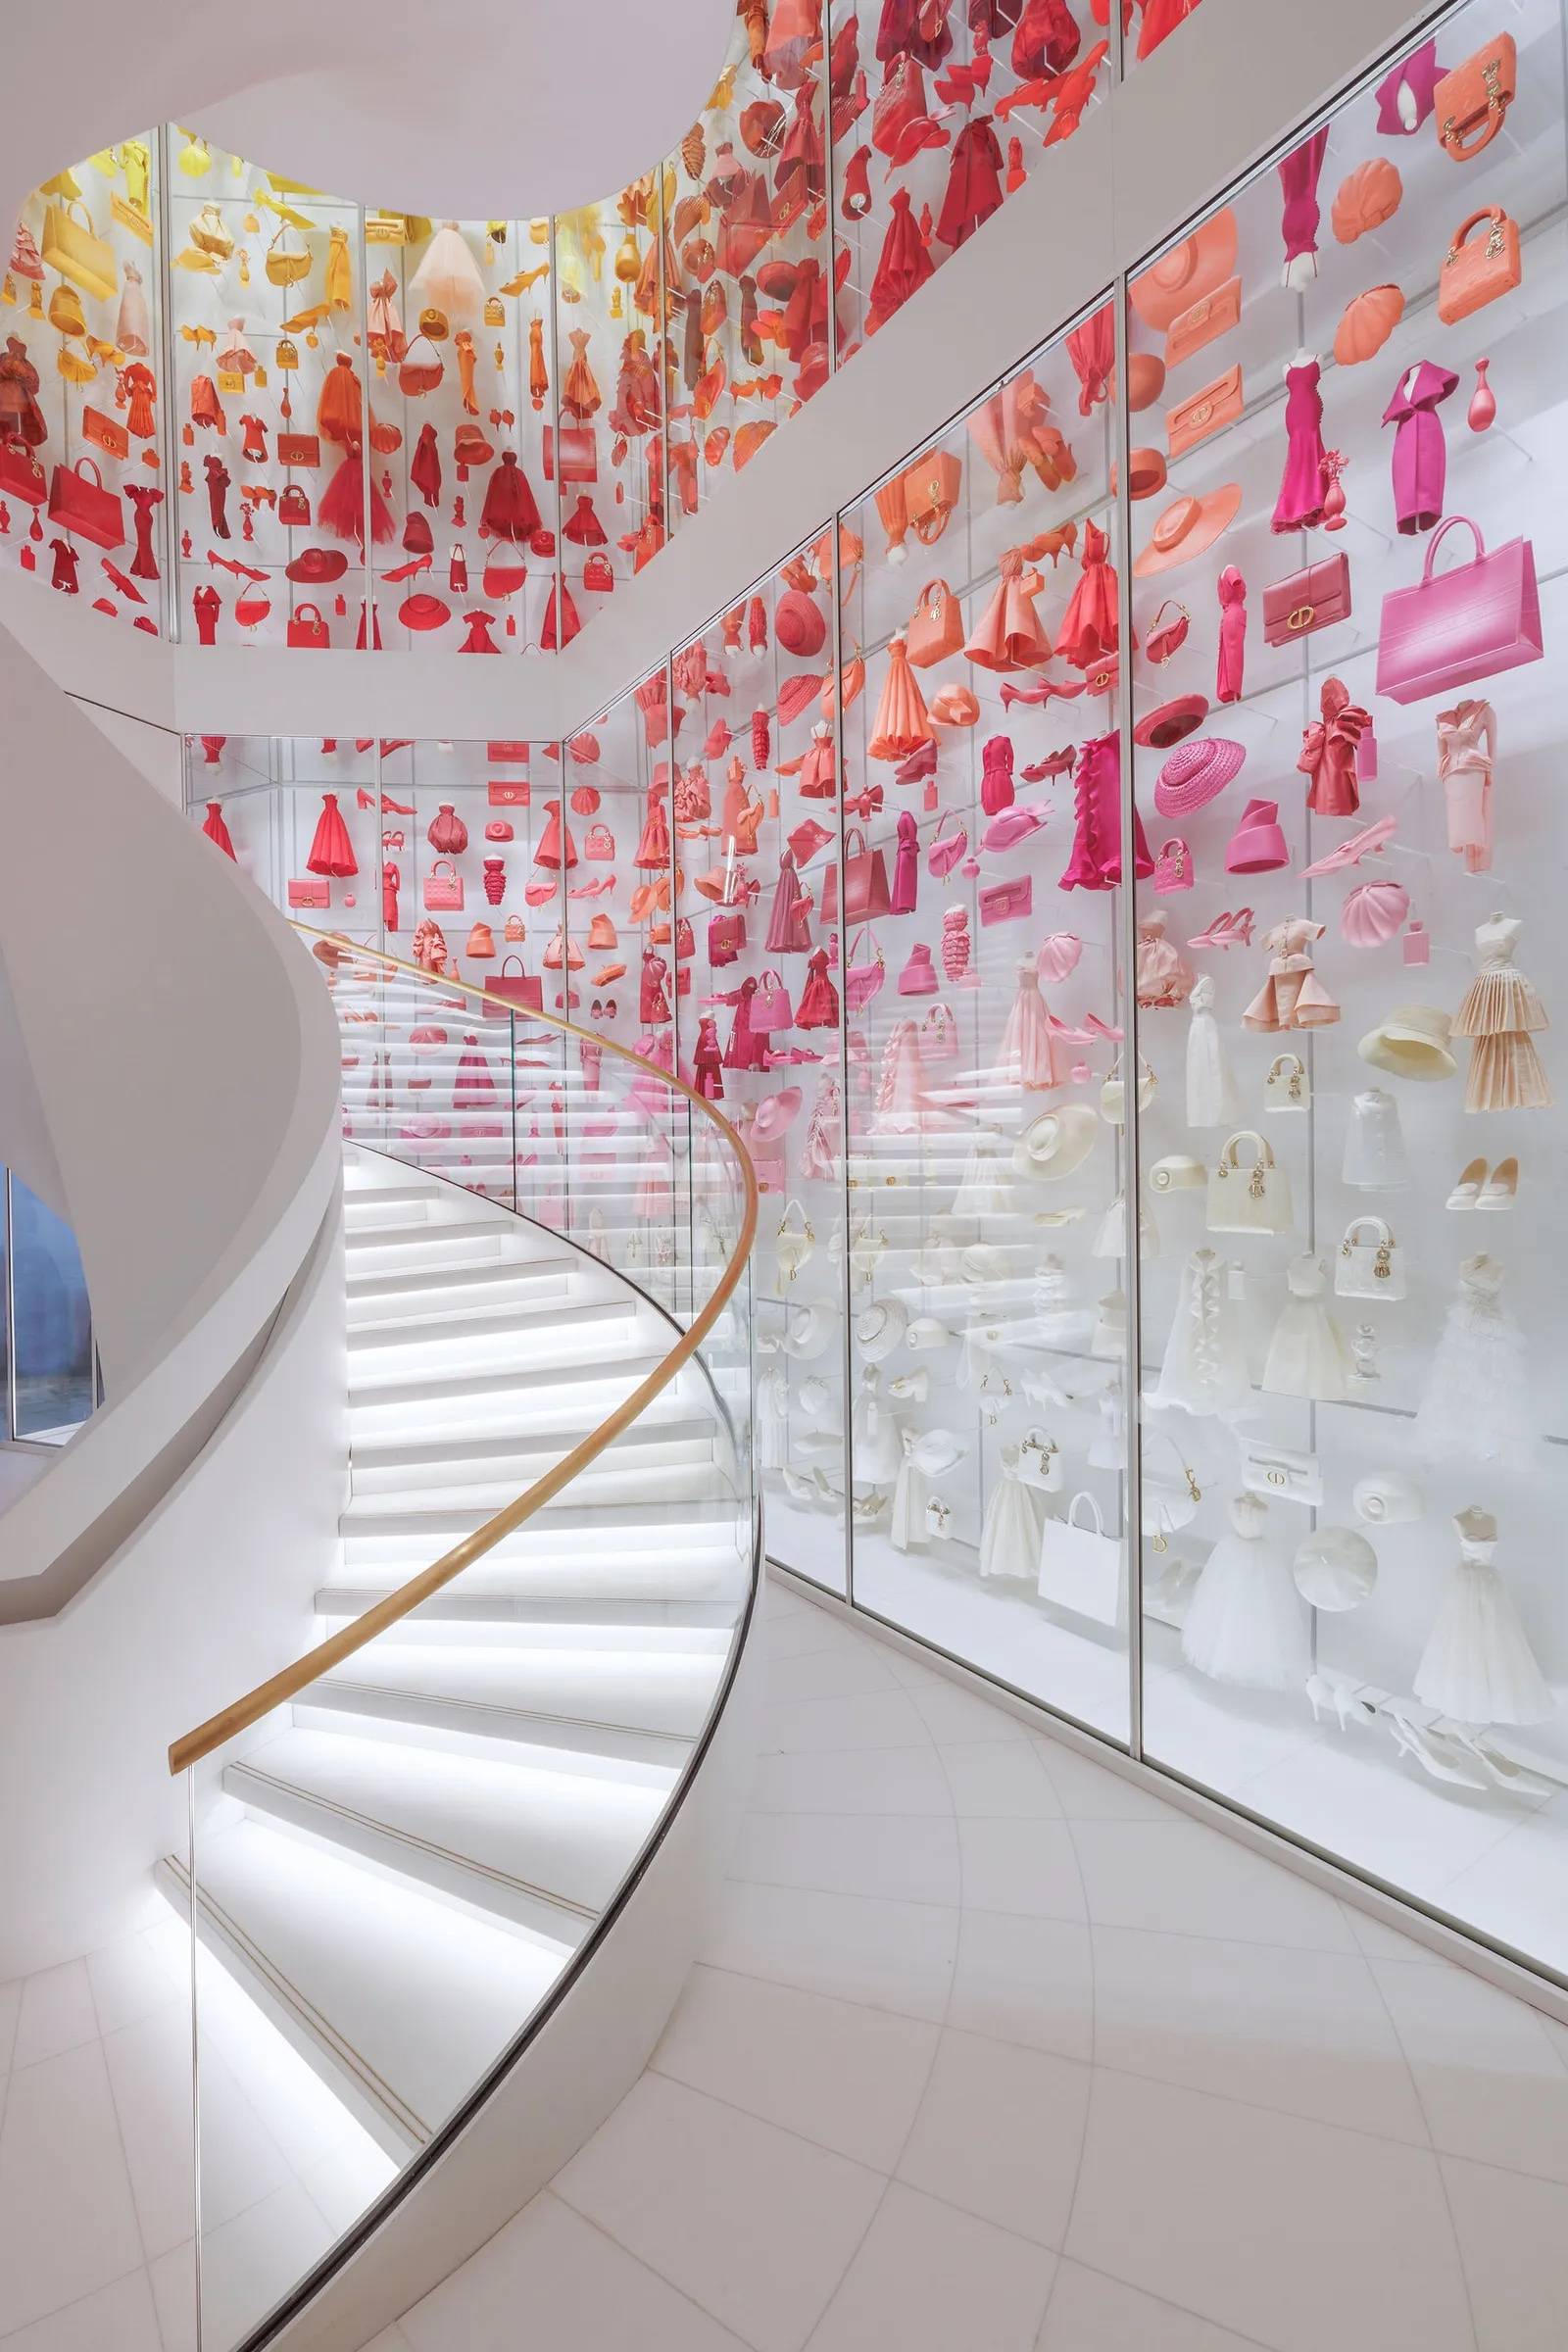 Przewidujemy, że białe spiralne schody i kolorowa galeria będą najmodniejszym instagramowym hot spotem. / Fot. Kristen Pelou / Dzięki uprzejmości marki Christian Dior